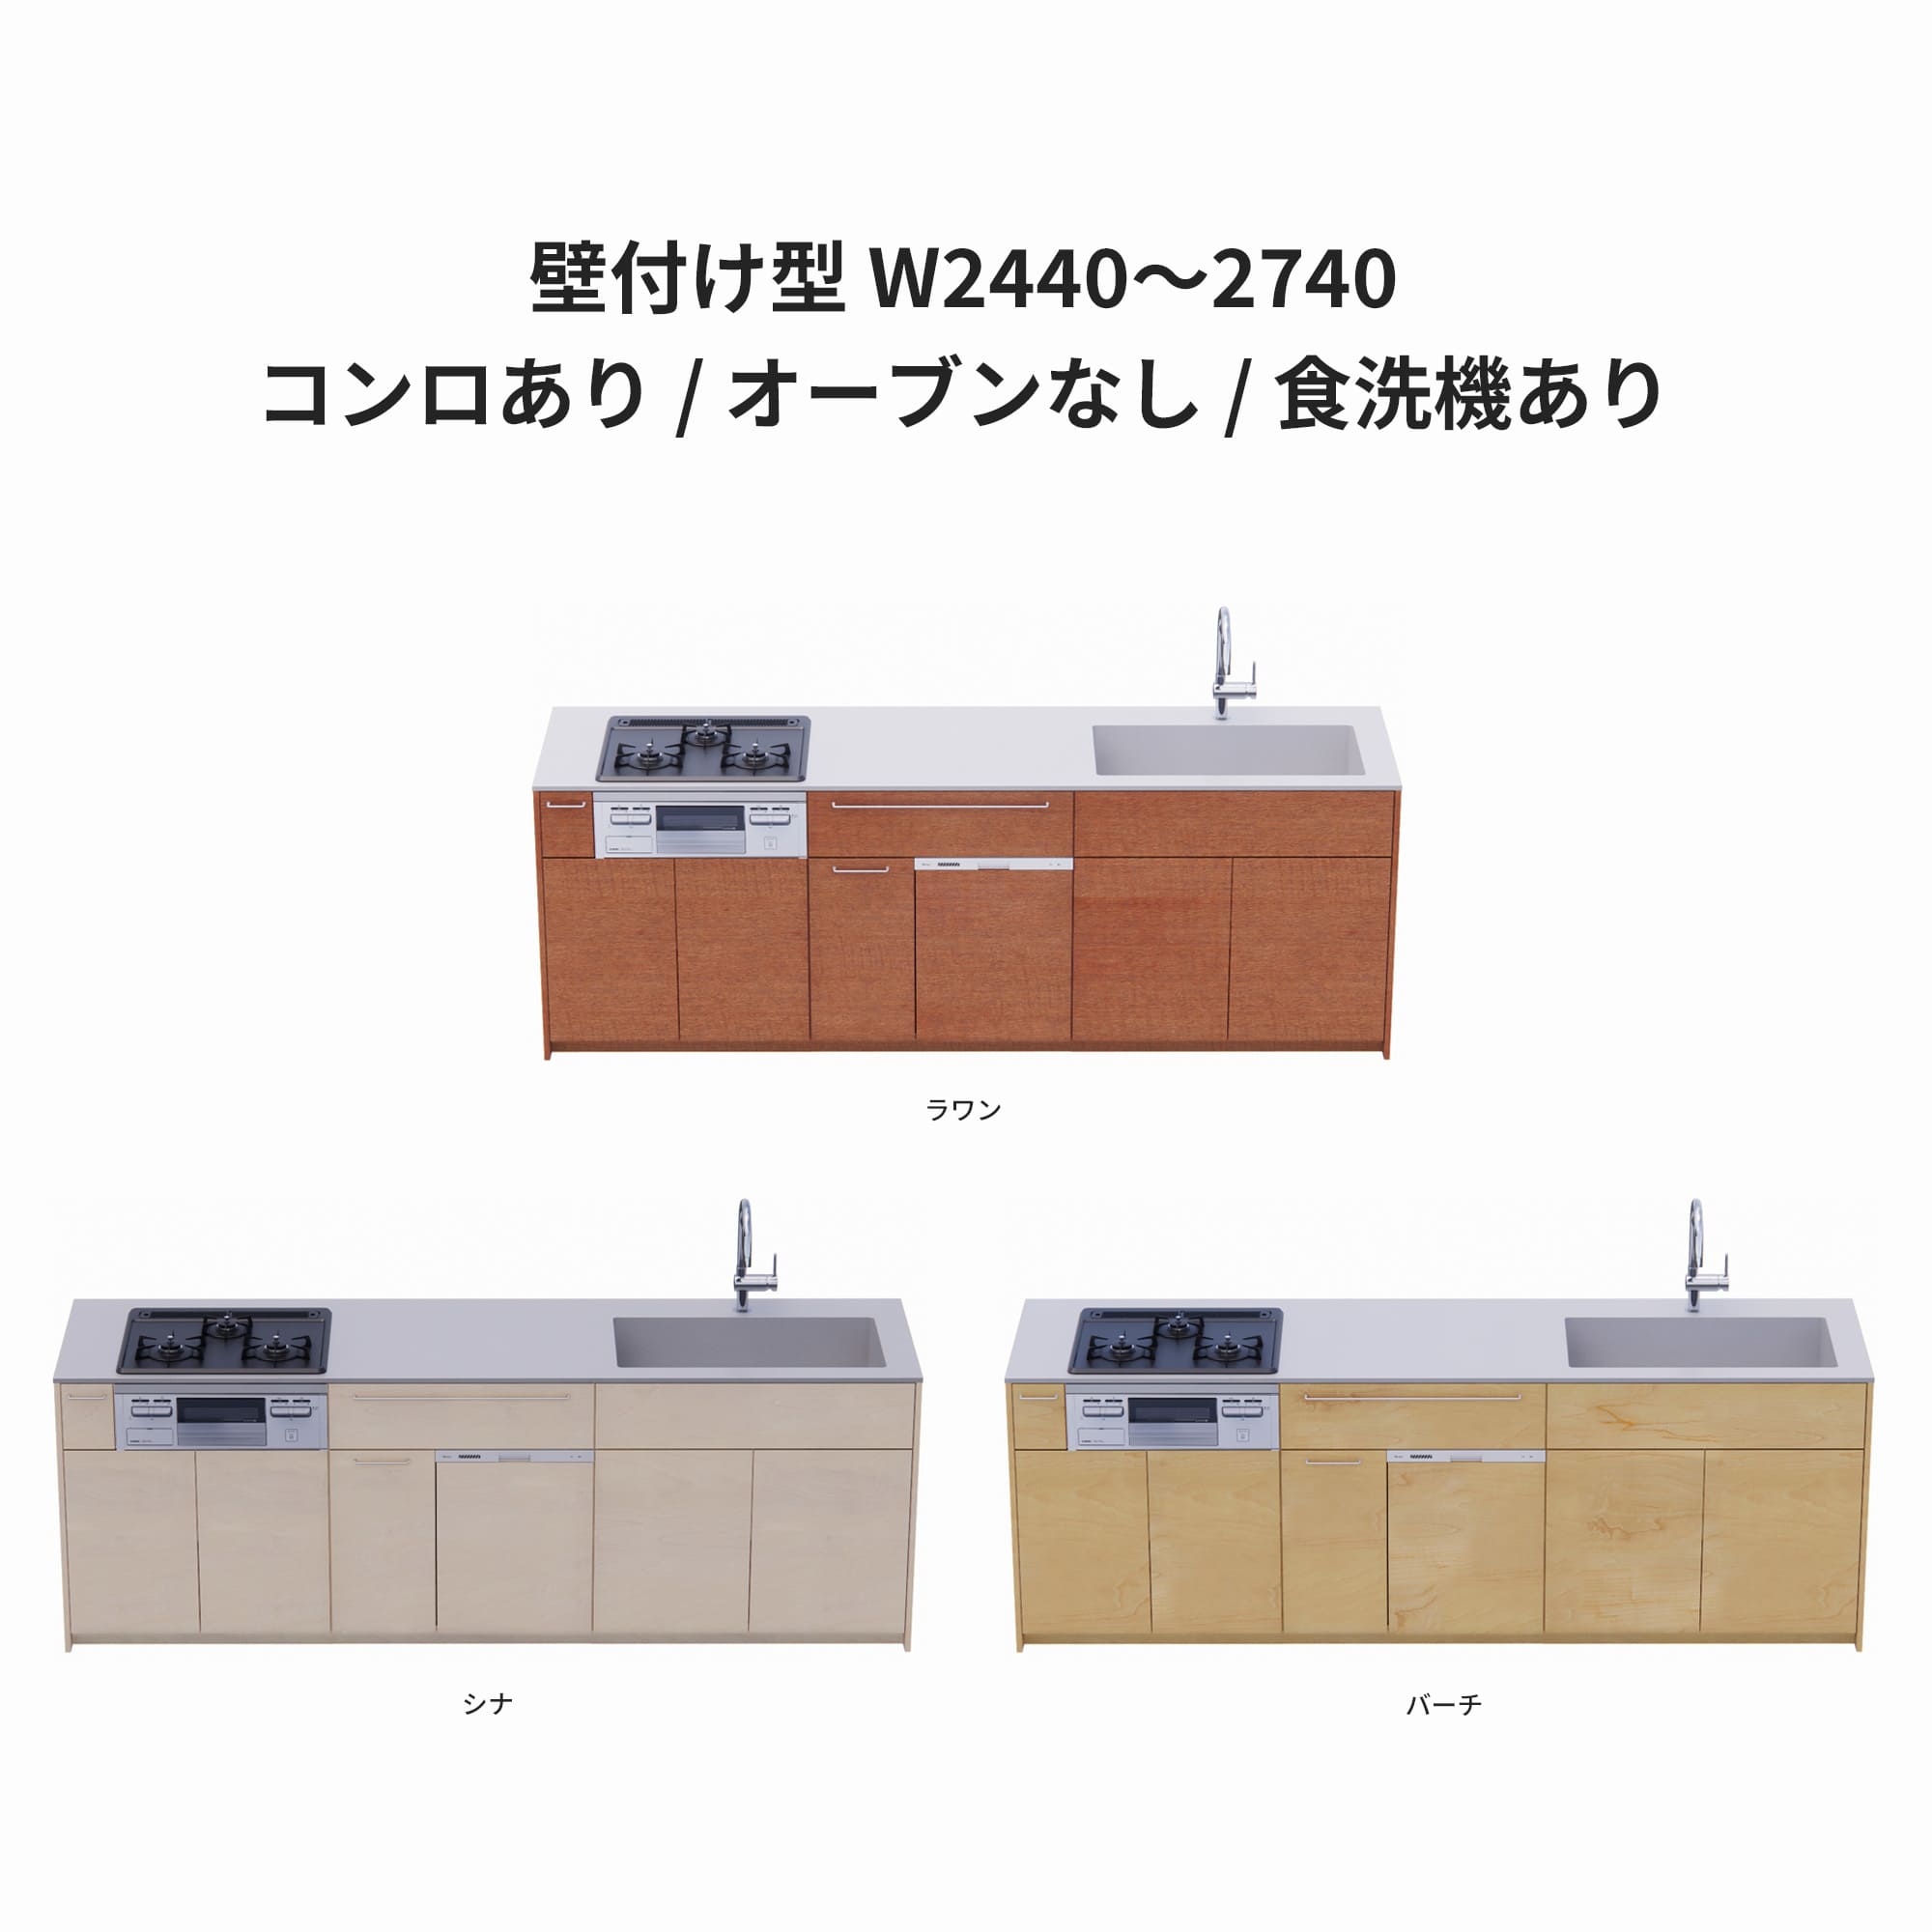 木製システムキッチン 壁付け型 W2440～2740・コンロあり / オーブンなし / 食洗機あり KB-KC022-26-G183 ラワン・シナ・バーチが選択できます